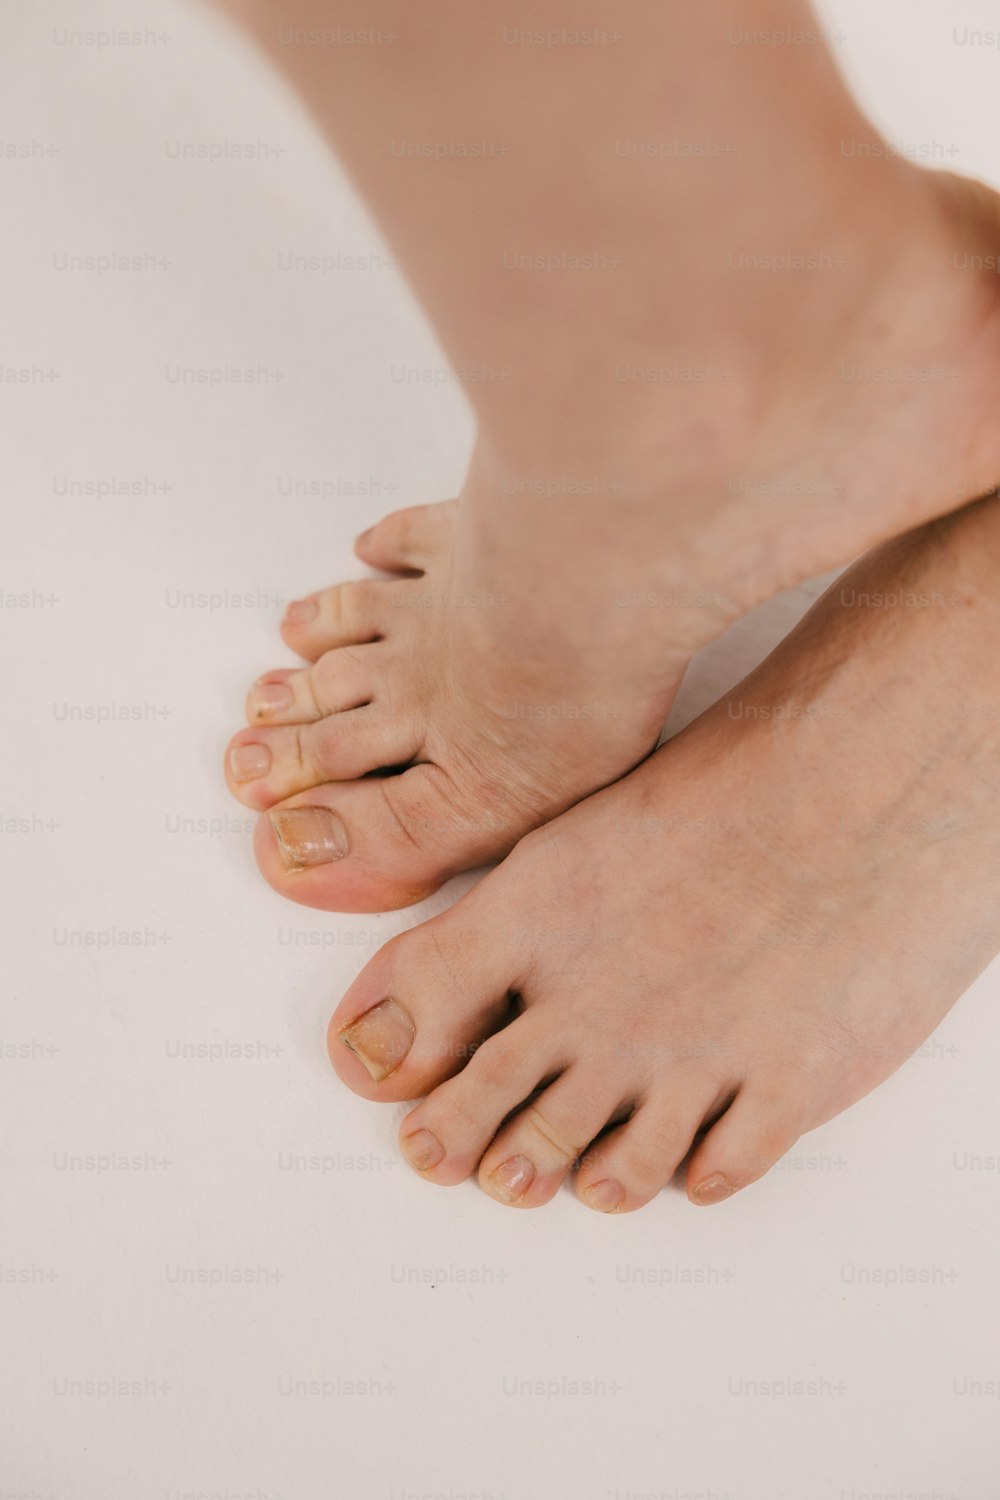 eine Nahaufnahme der nackten Füße einer Person auf einer weißen Oberfläche